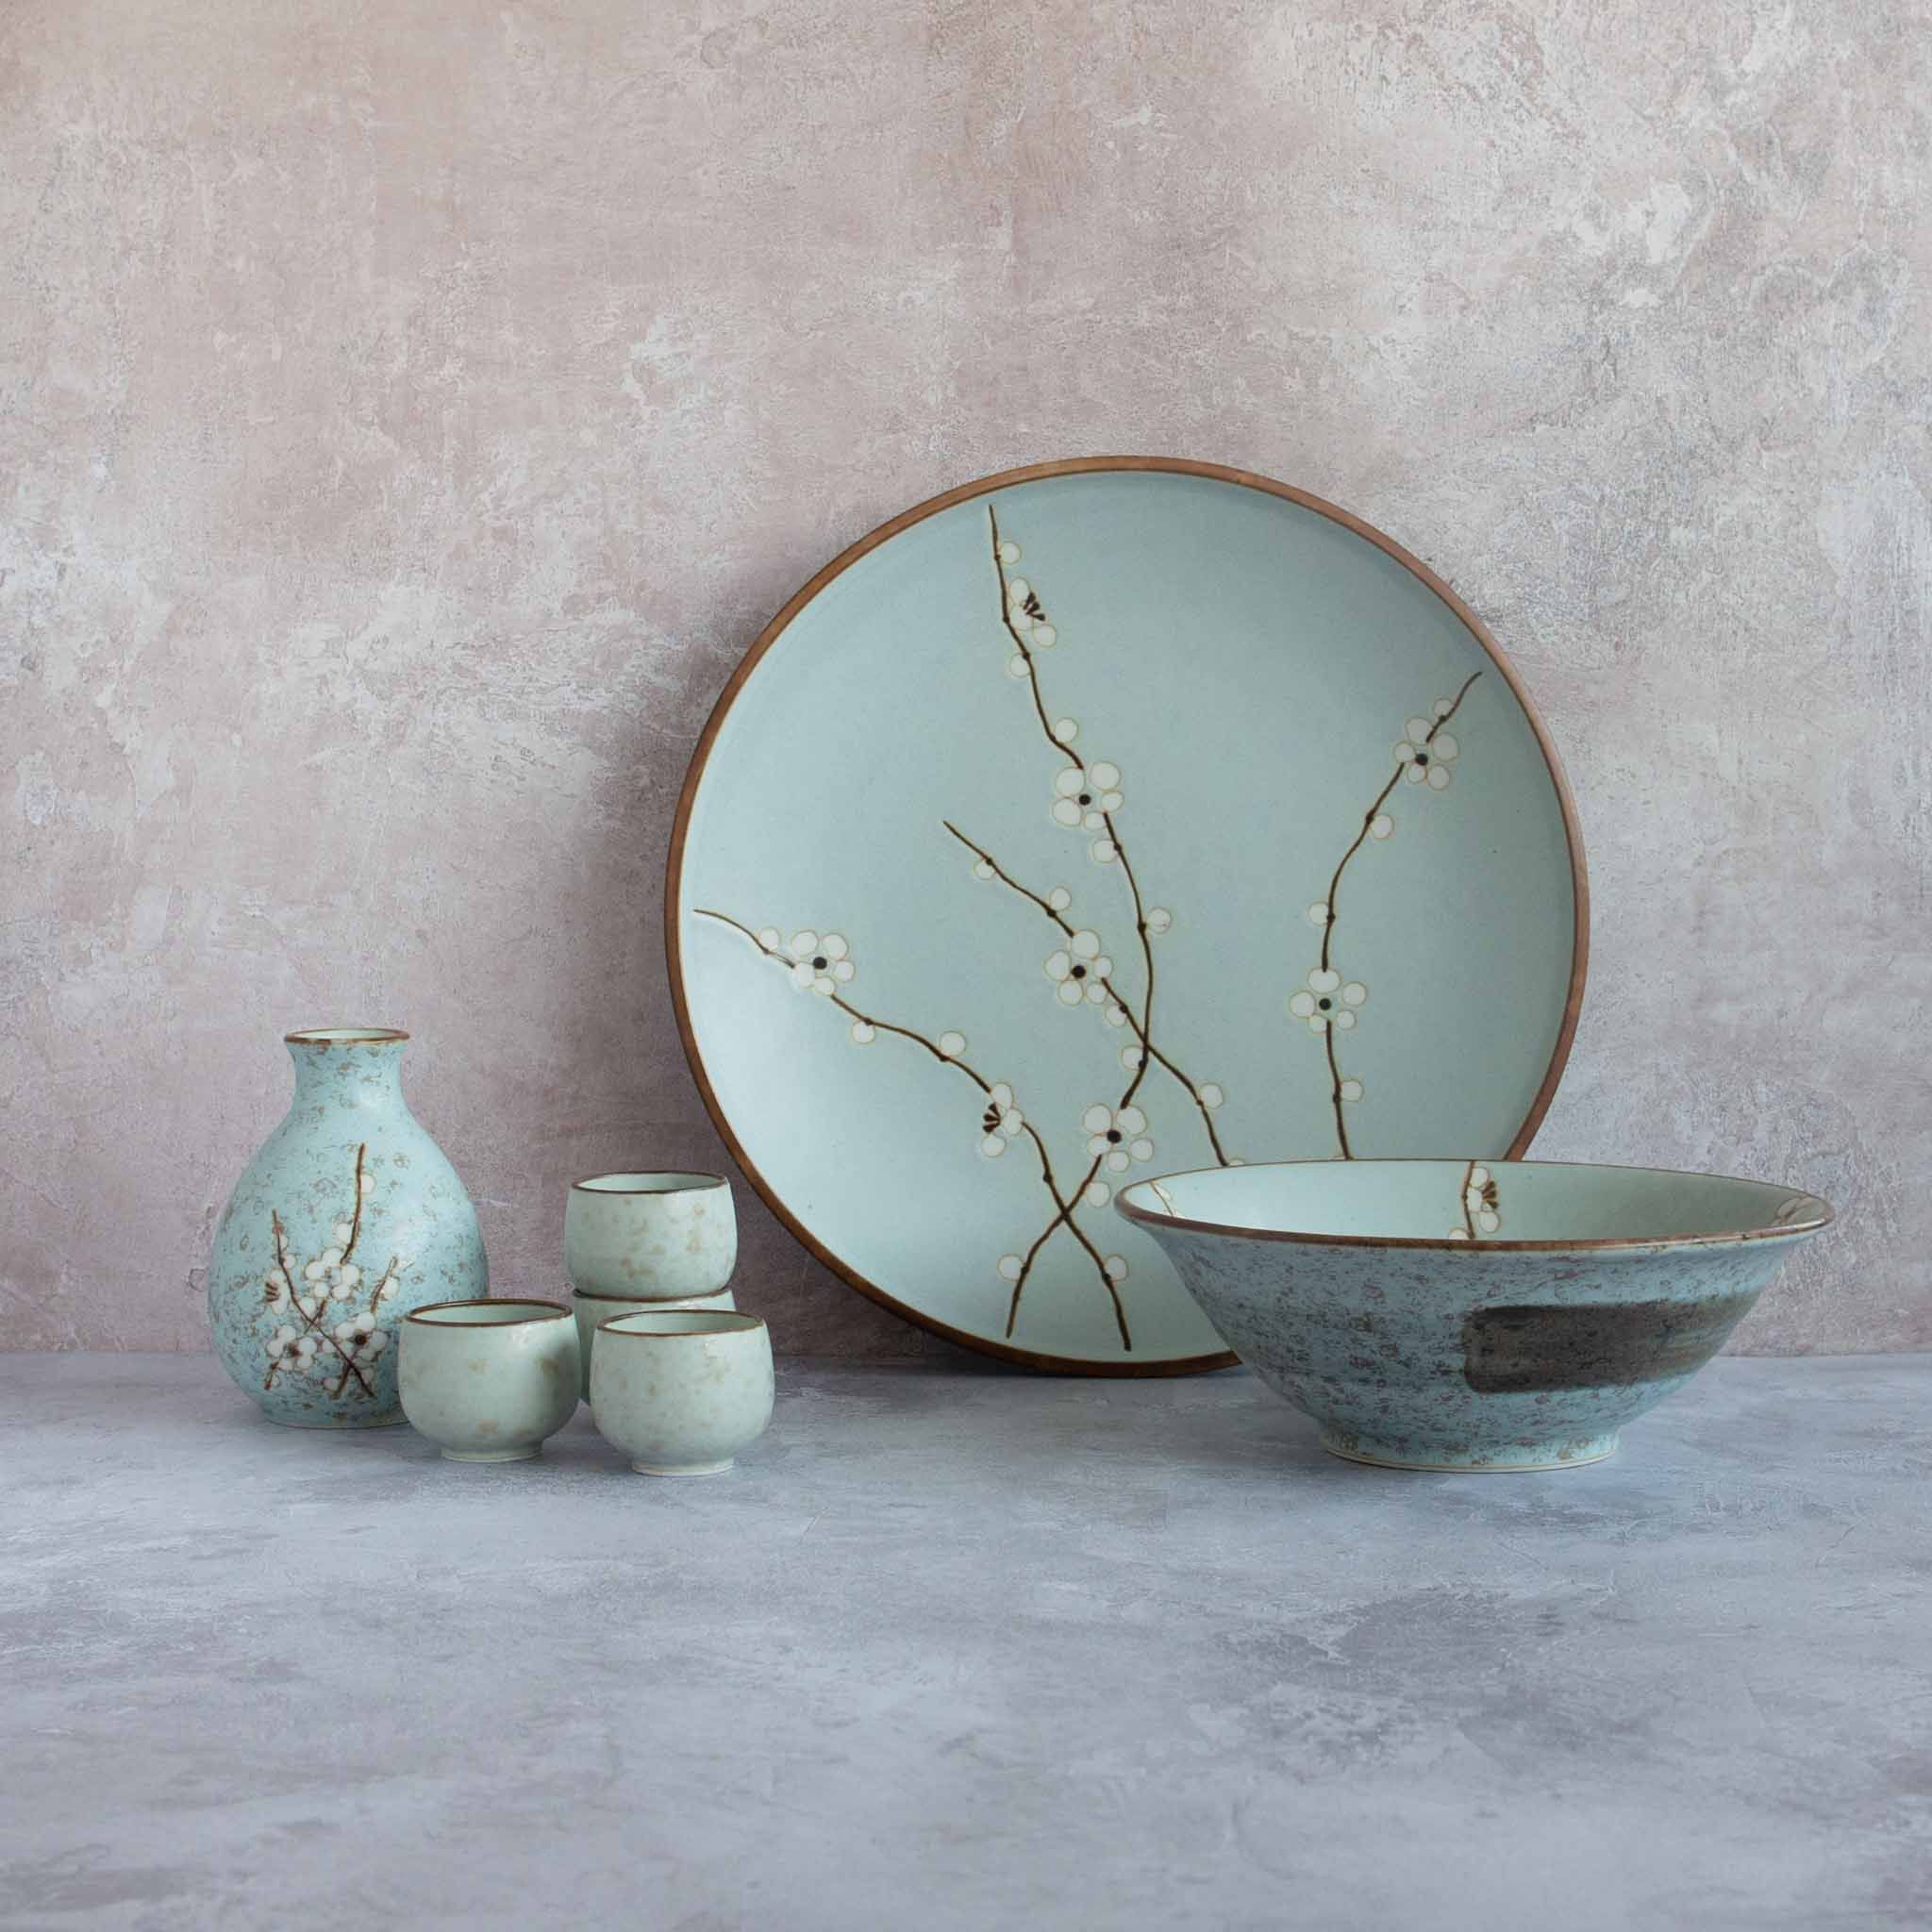 Kiji Stoneware & Ceramics Sakura Blossom Side Plate 19cm x 13cm Tableware Japanese Tableware Japanese Food